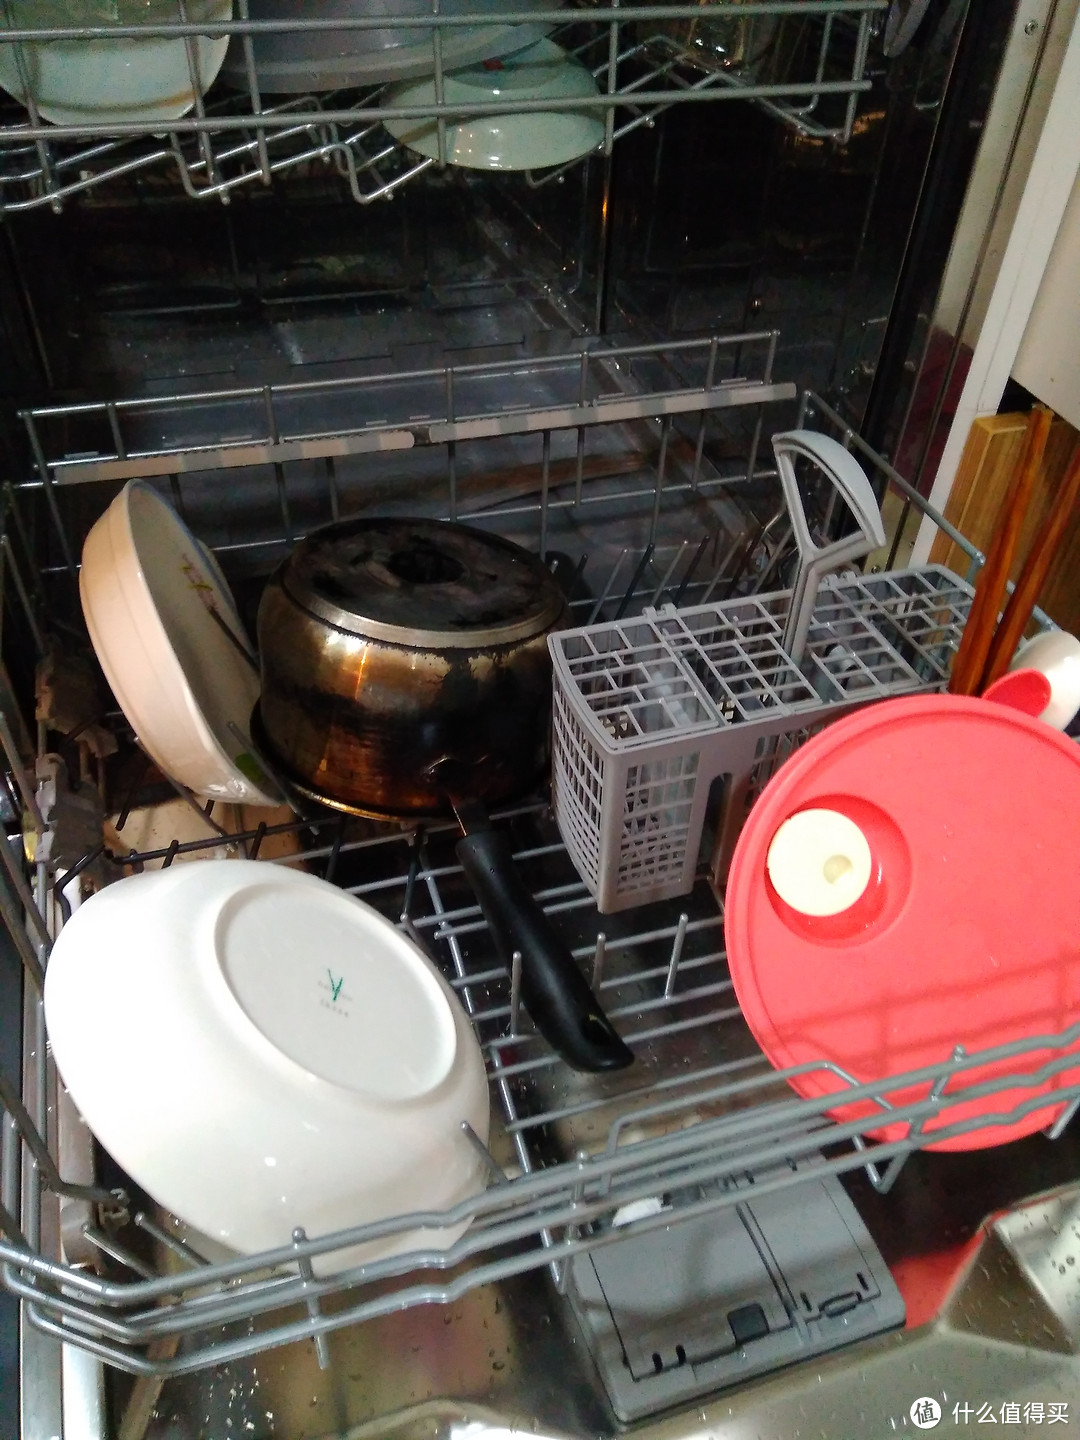 SIEMENS 西门子 76M540Ti 洗碗机 开箱